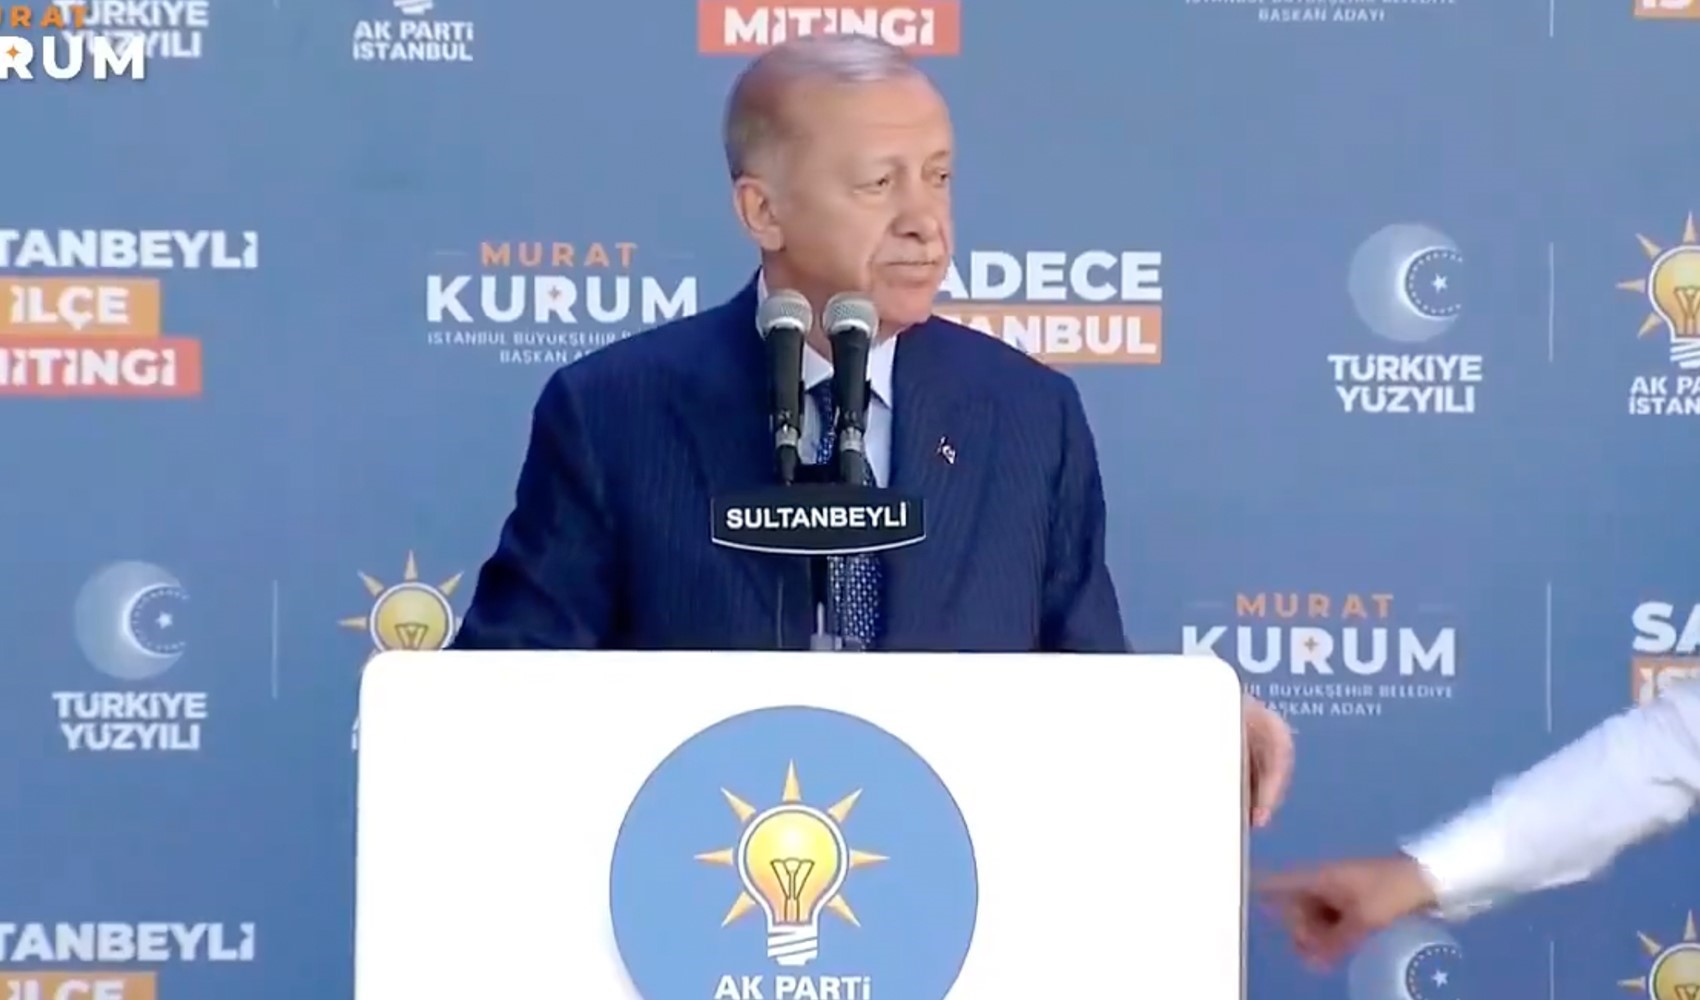 Prompter bozuldu, Erdoğan konuşmasına ara verdi